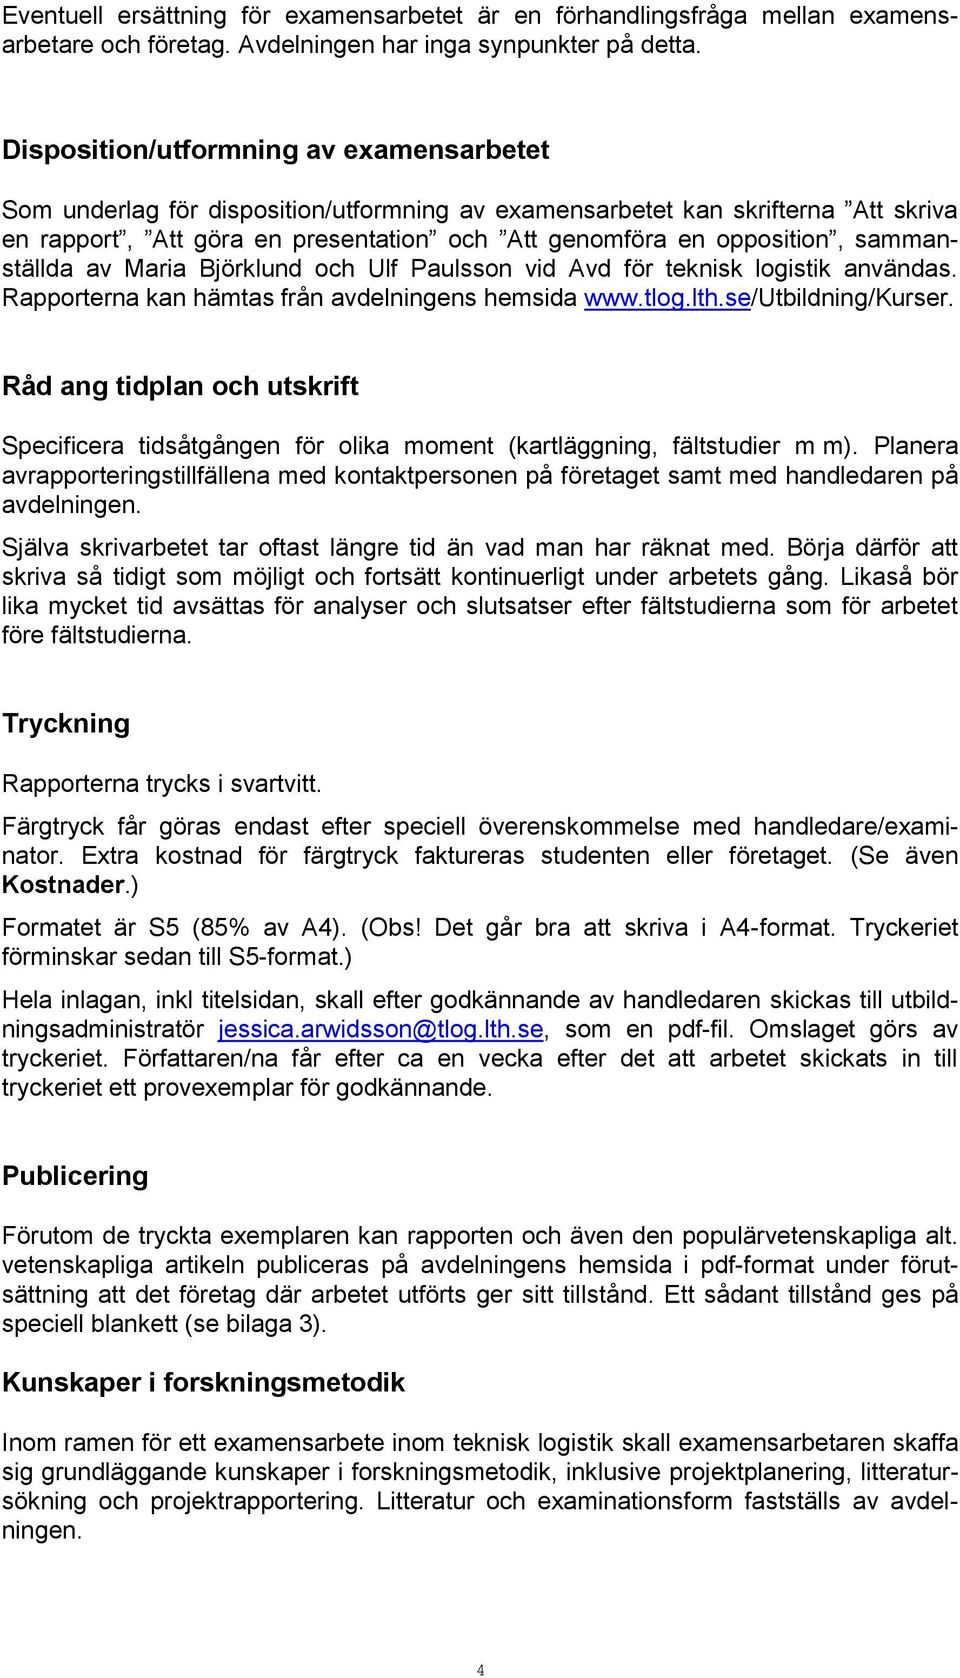 sammanställda av Maria Björklund och Ulf Paulsson vid Avd för teknisk logistik användas. Rapporterna kan hämtas från avdelningens hemsida www.tlog.lth.se/utbildning/kurser.